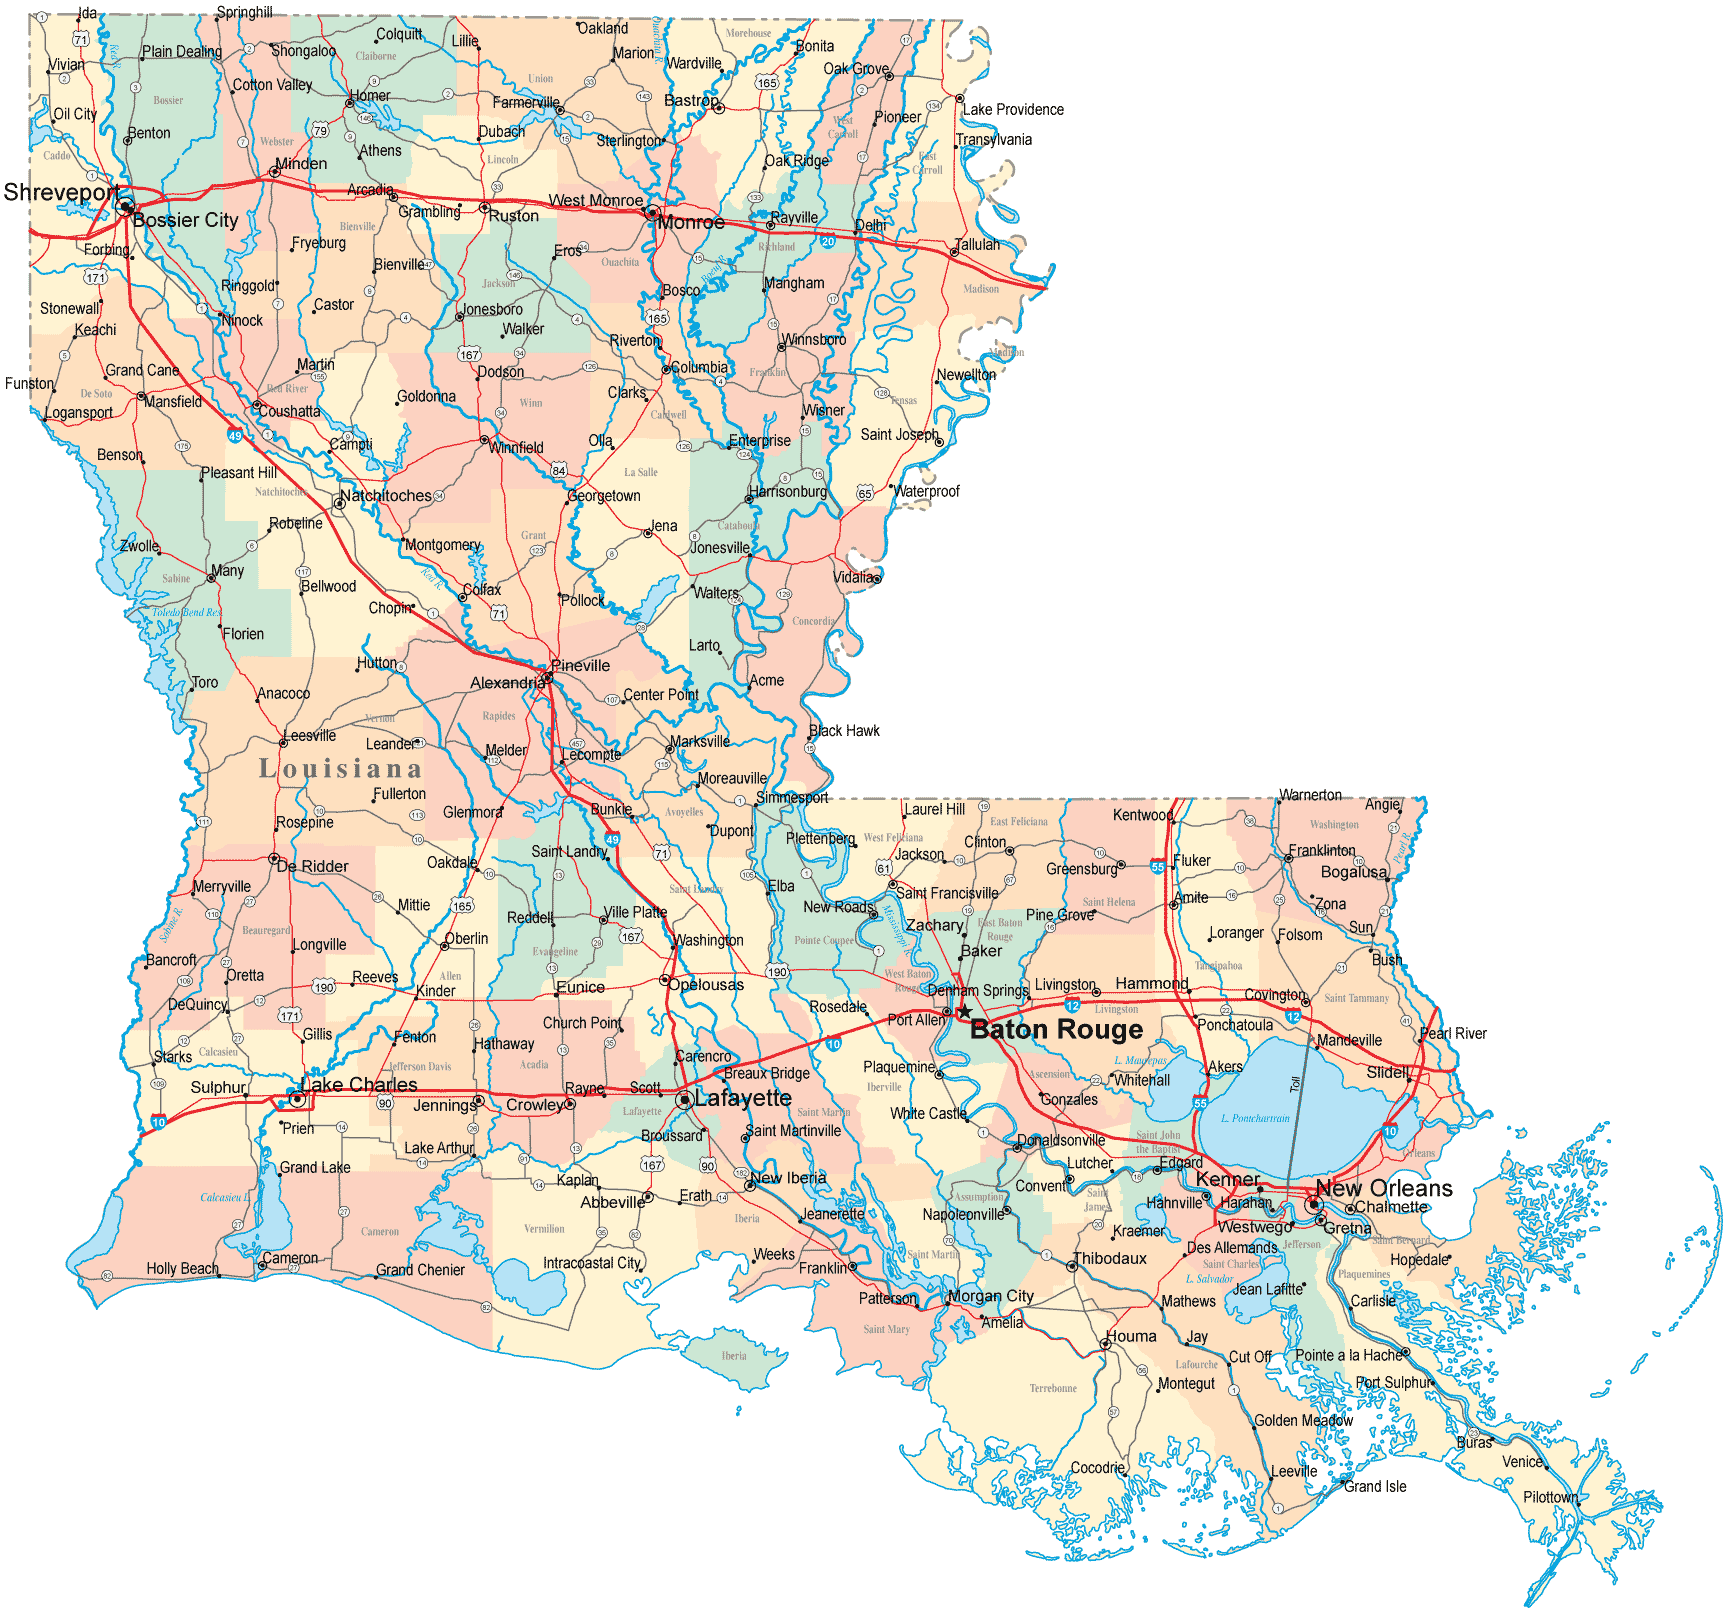 Louisiana Road Map - LA Road Map - Louisiana Highway Map